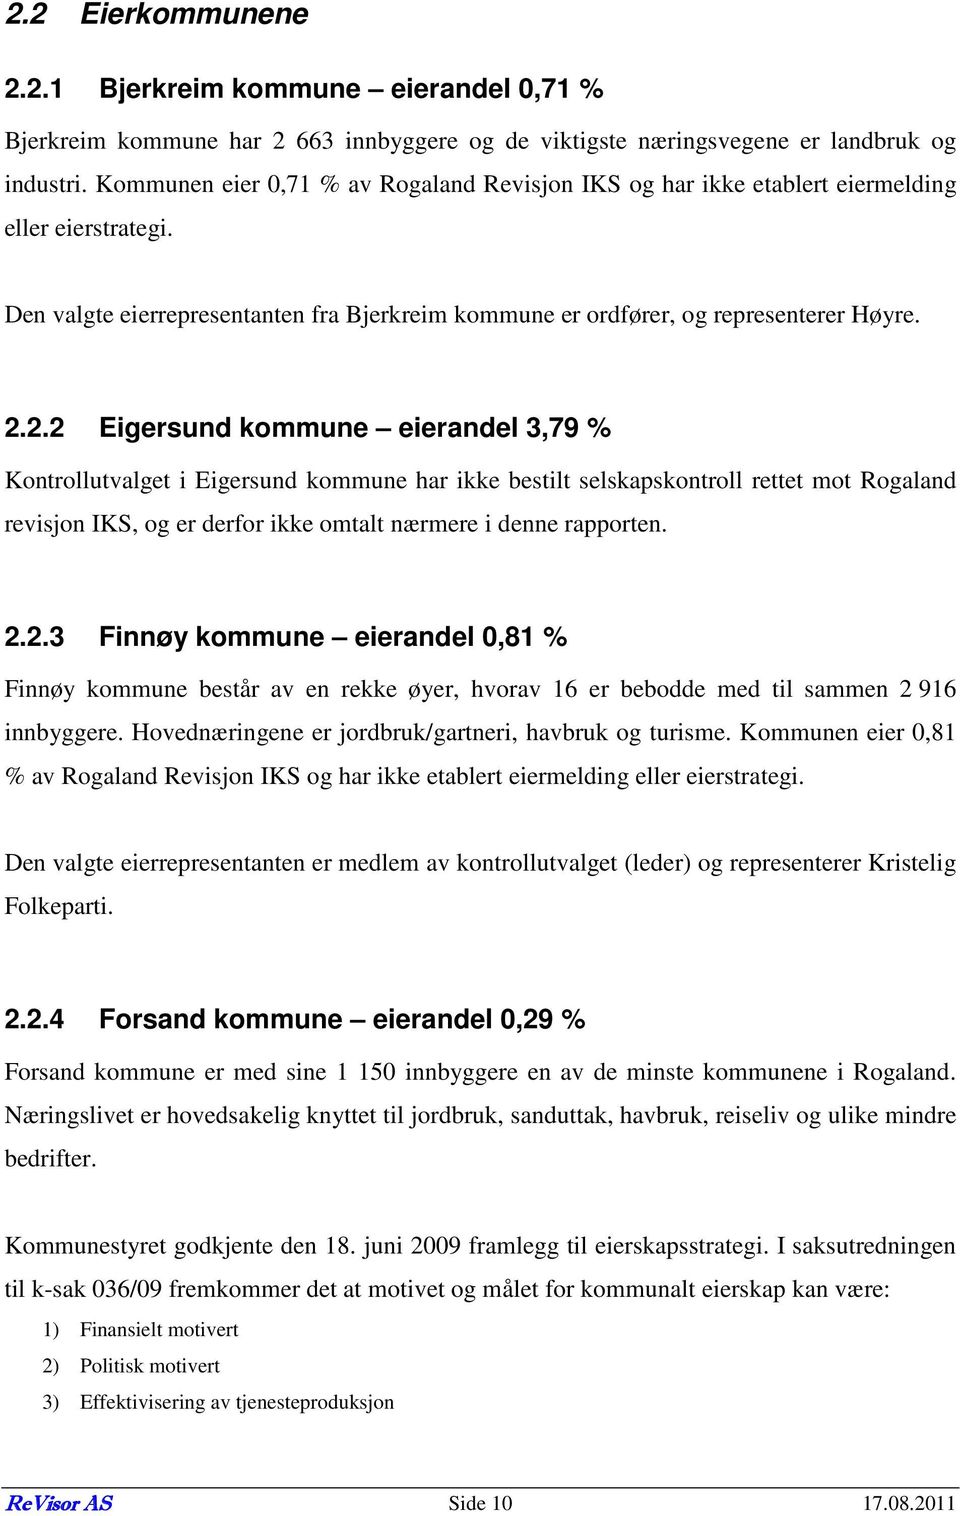 2.2 Eigersund kommune eierandel 3,79 % Kontrollutvalget i Eigersund kommune har ikke bestilt selskapskontroll rettet mot Rogaland revisjon IKS, og er derfor ikke omtalt nærmere i denne rapporten. 2.2.3 Finnøy kommune eierandel 0,81 % Finnøy kommune består av en rekke øyer, hvorav 16 er bebodde med til sammen 2 916 innbyggere.